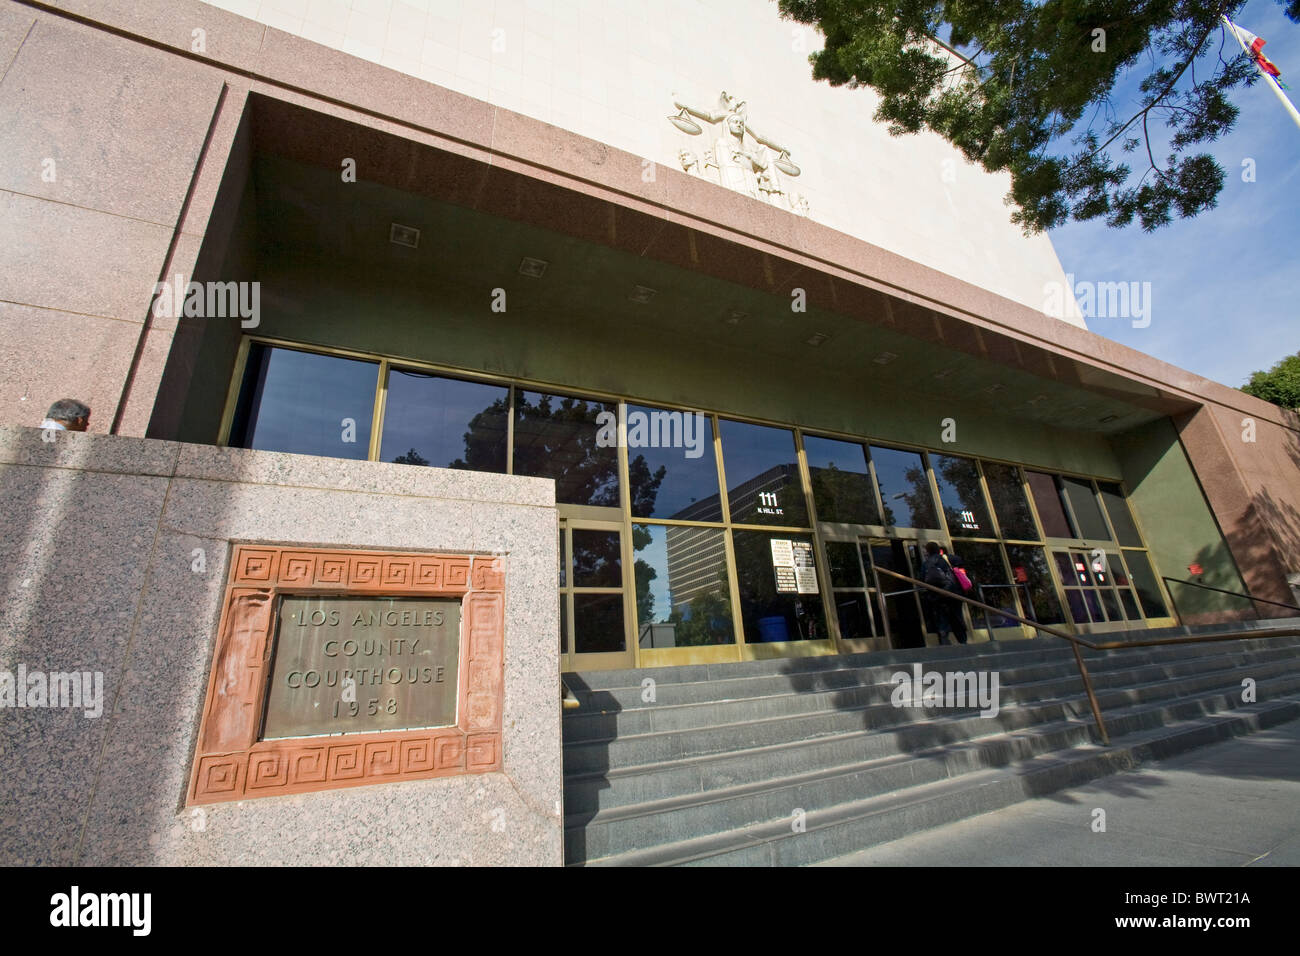 Stanley Mosk County Courthouse qui a traité ces procès célèbre le meurtre de Charles Manson le O. J. Simpson affaire de meurtre Banque D'Images